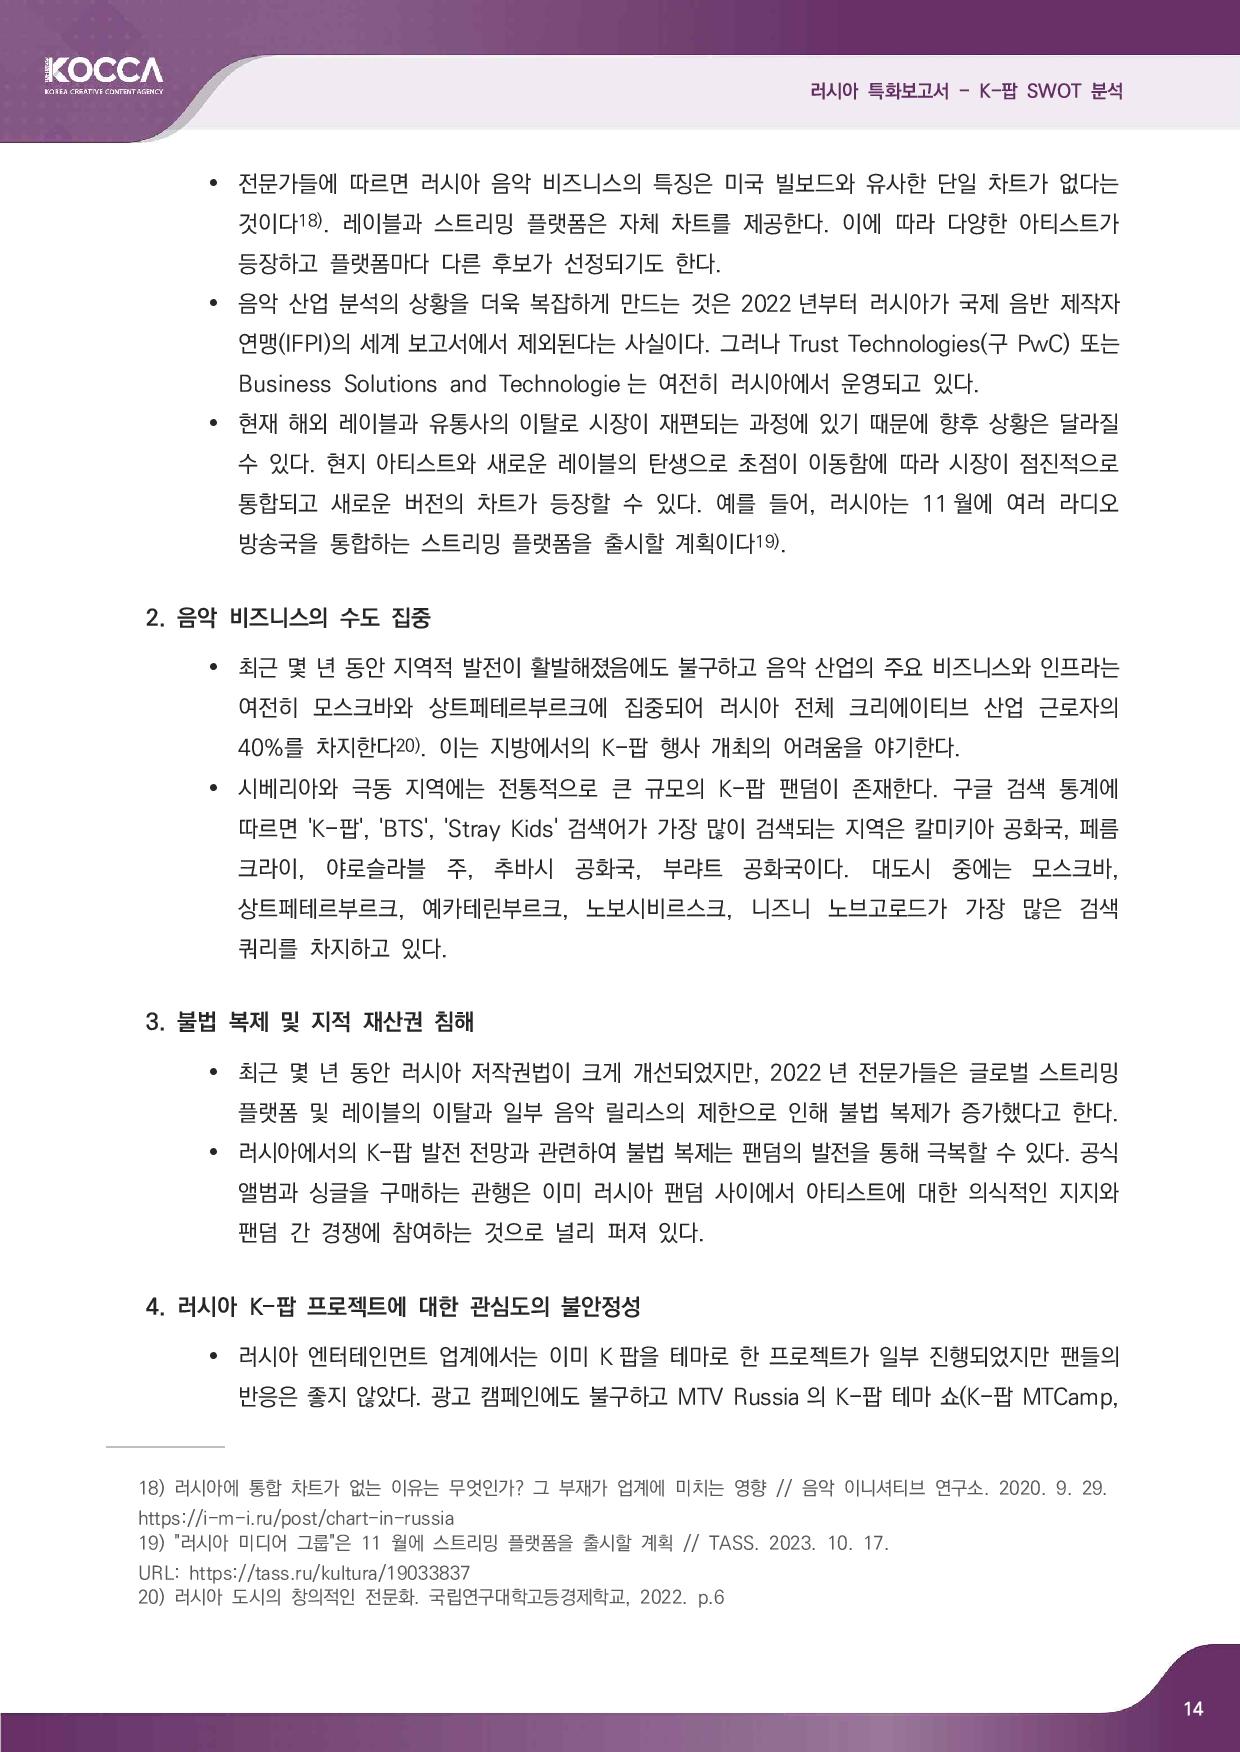 2. 러시아 특화보고서_K-pop SWOT 분석 (3)-page-016.jpg